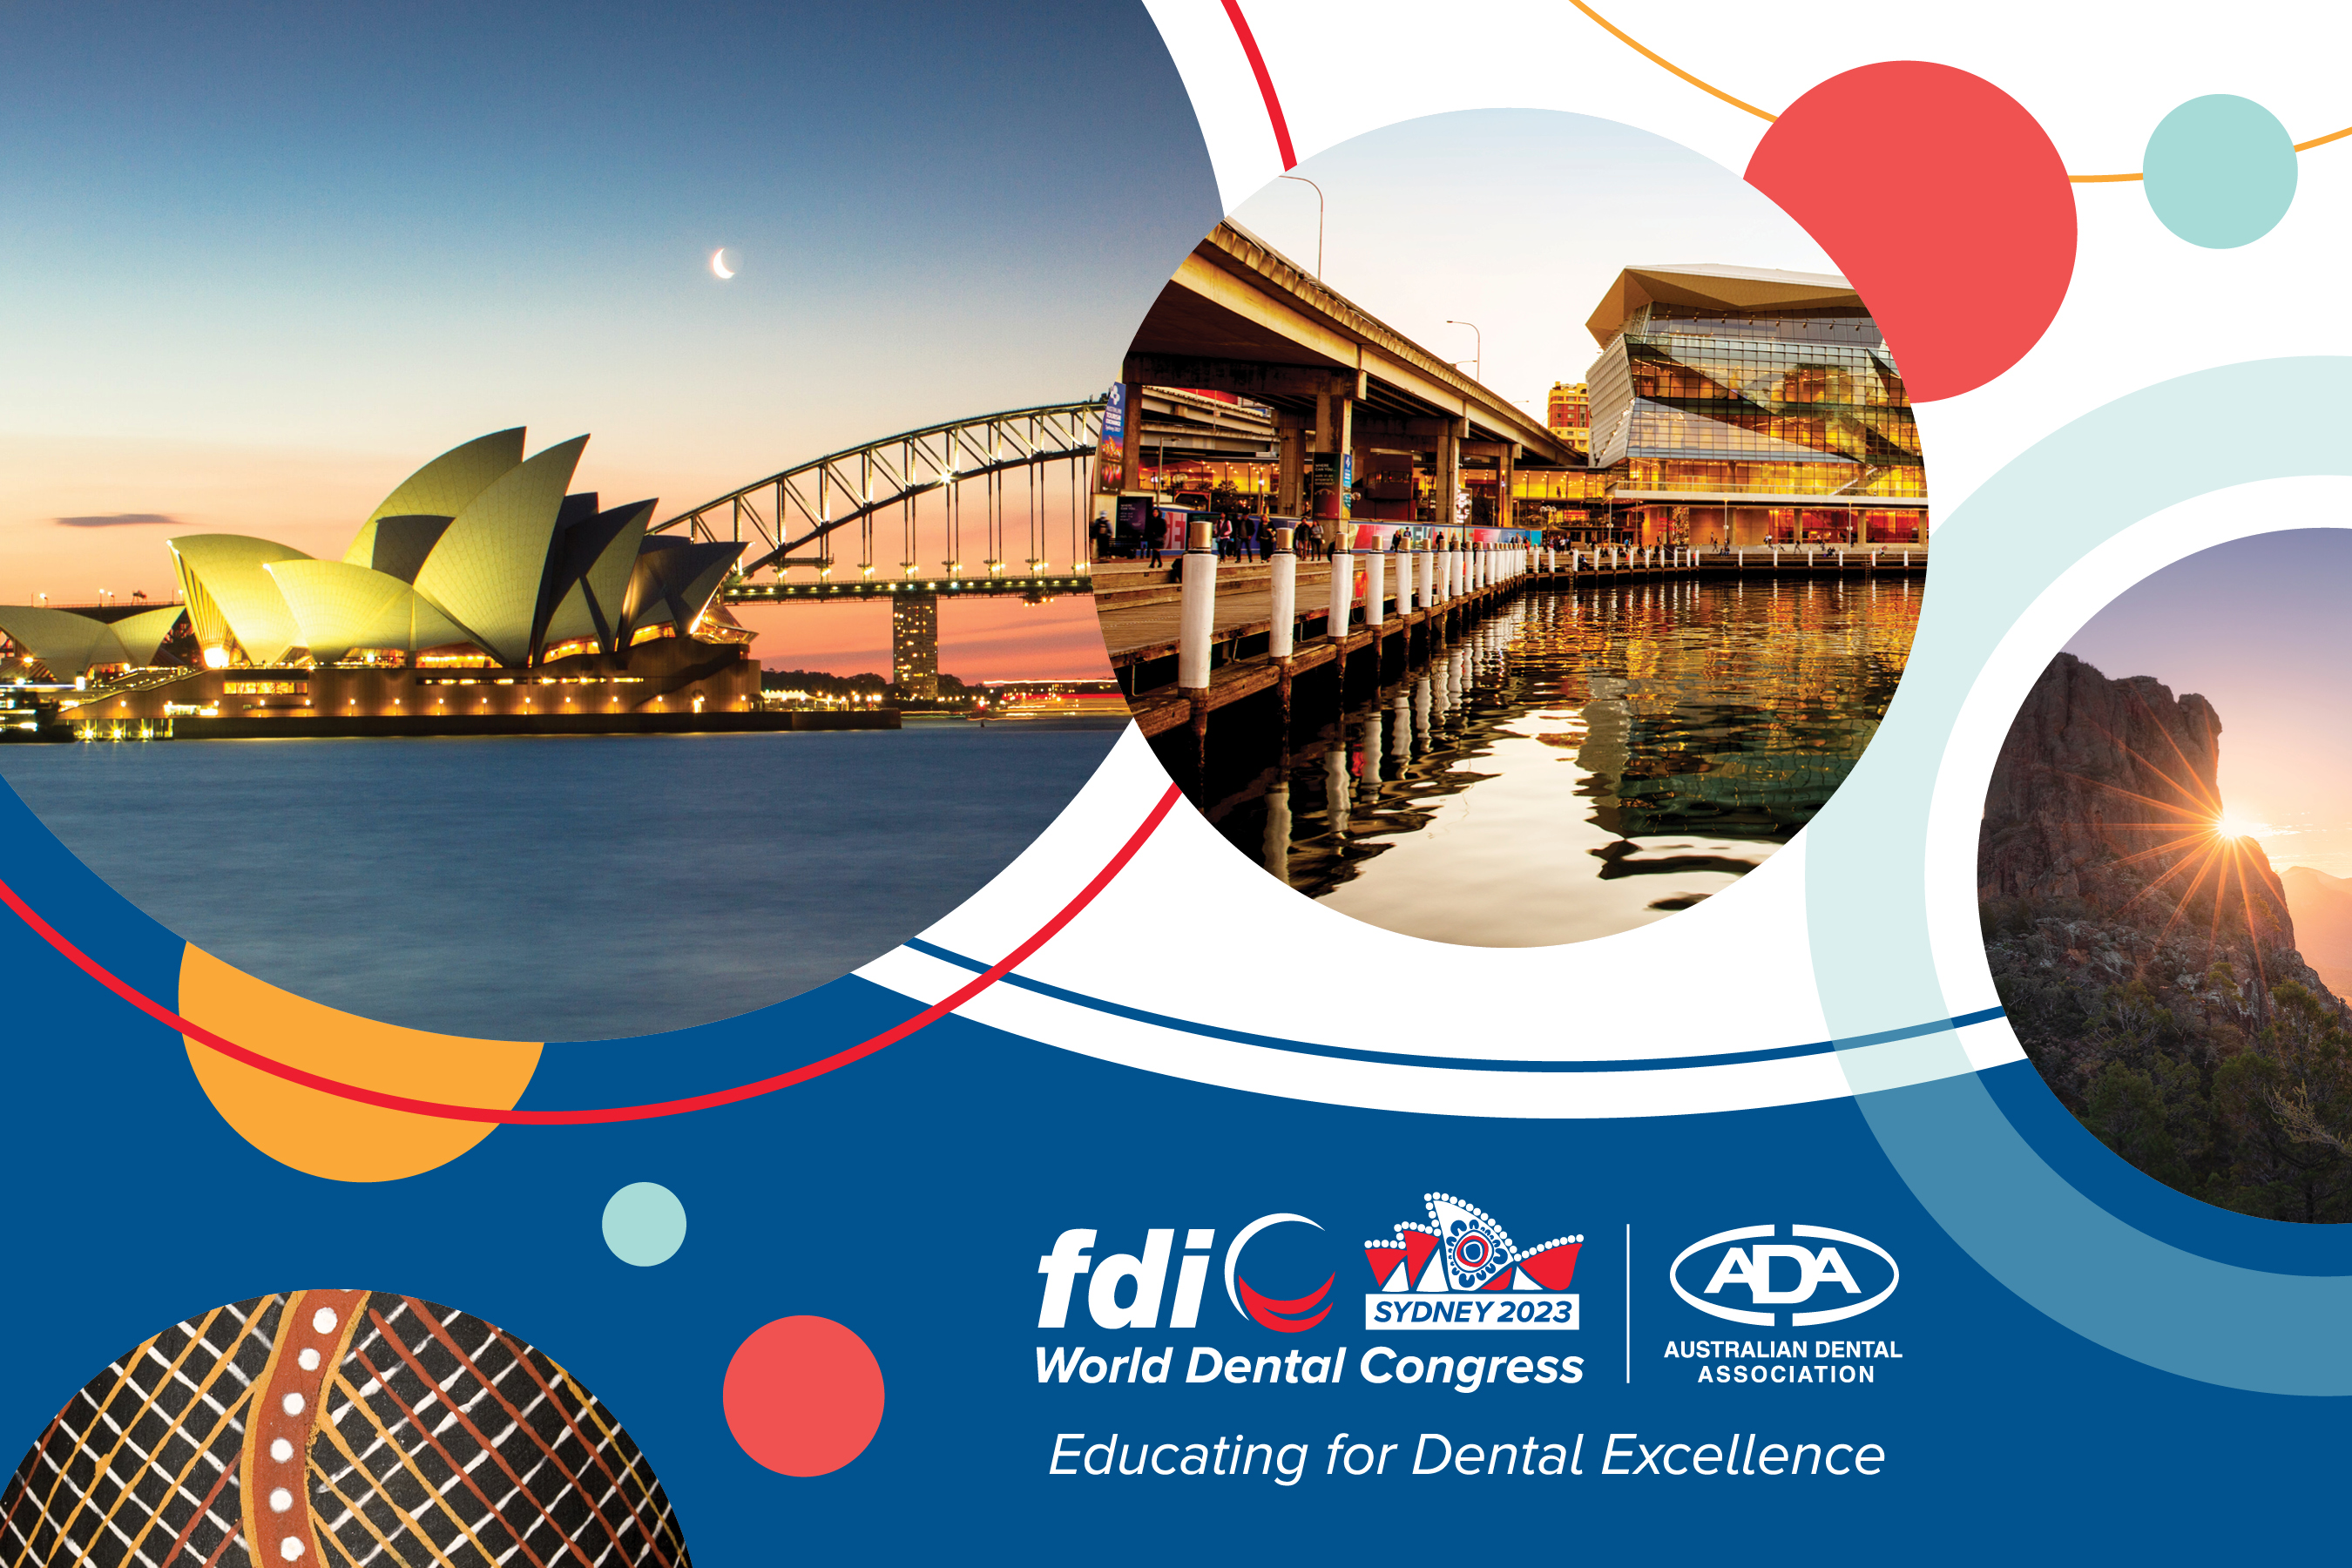 FDi World Dental Congress